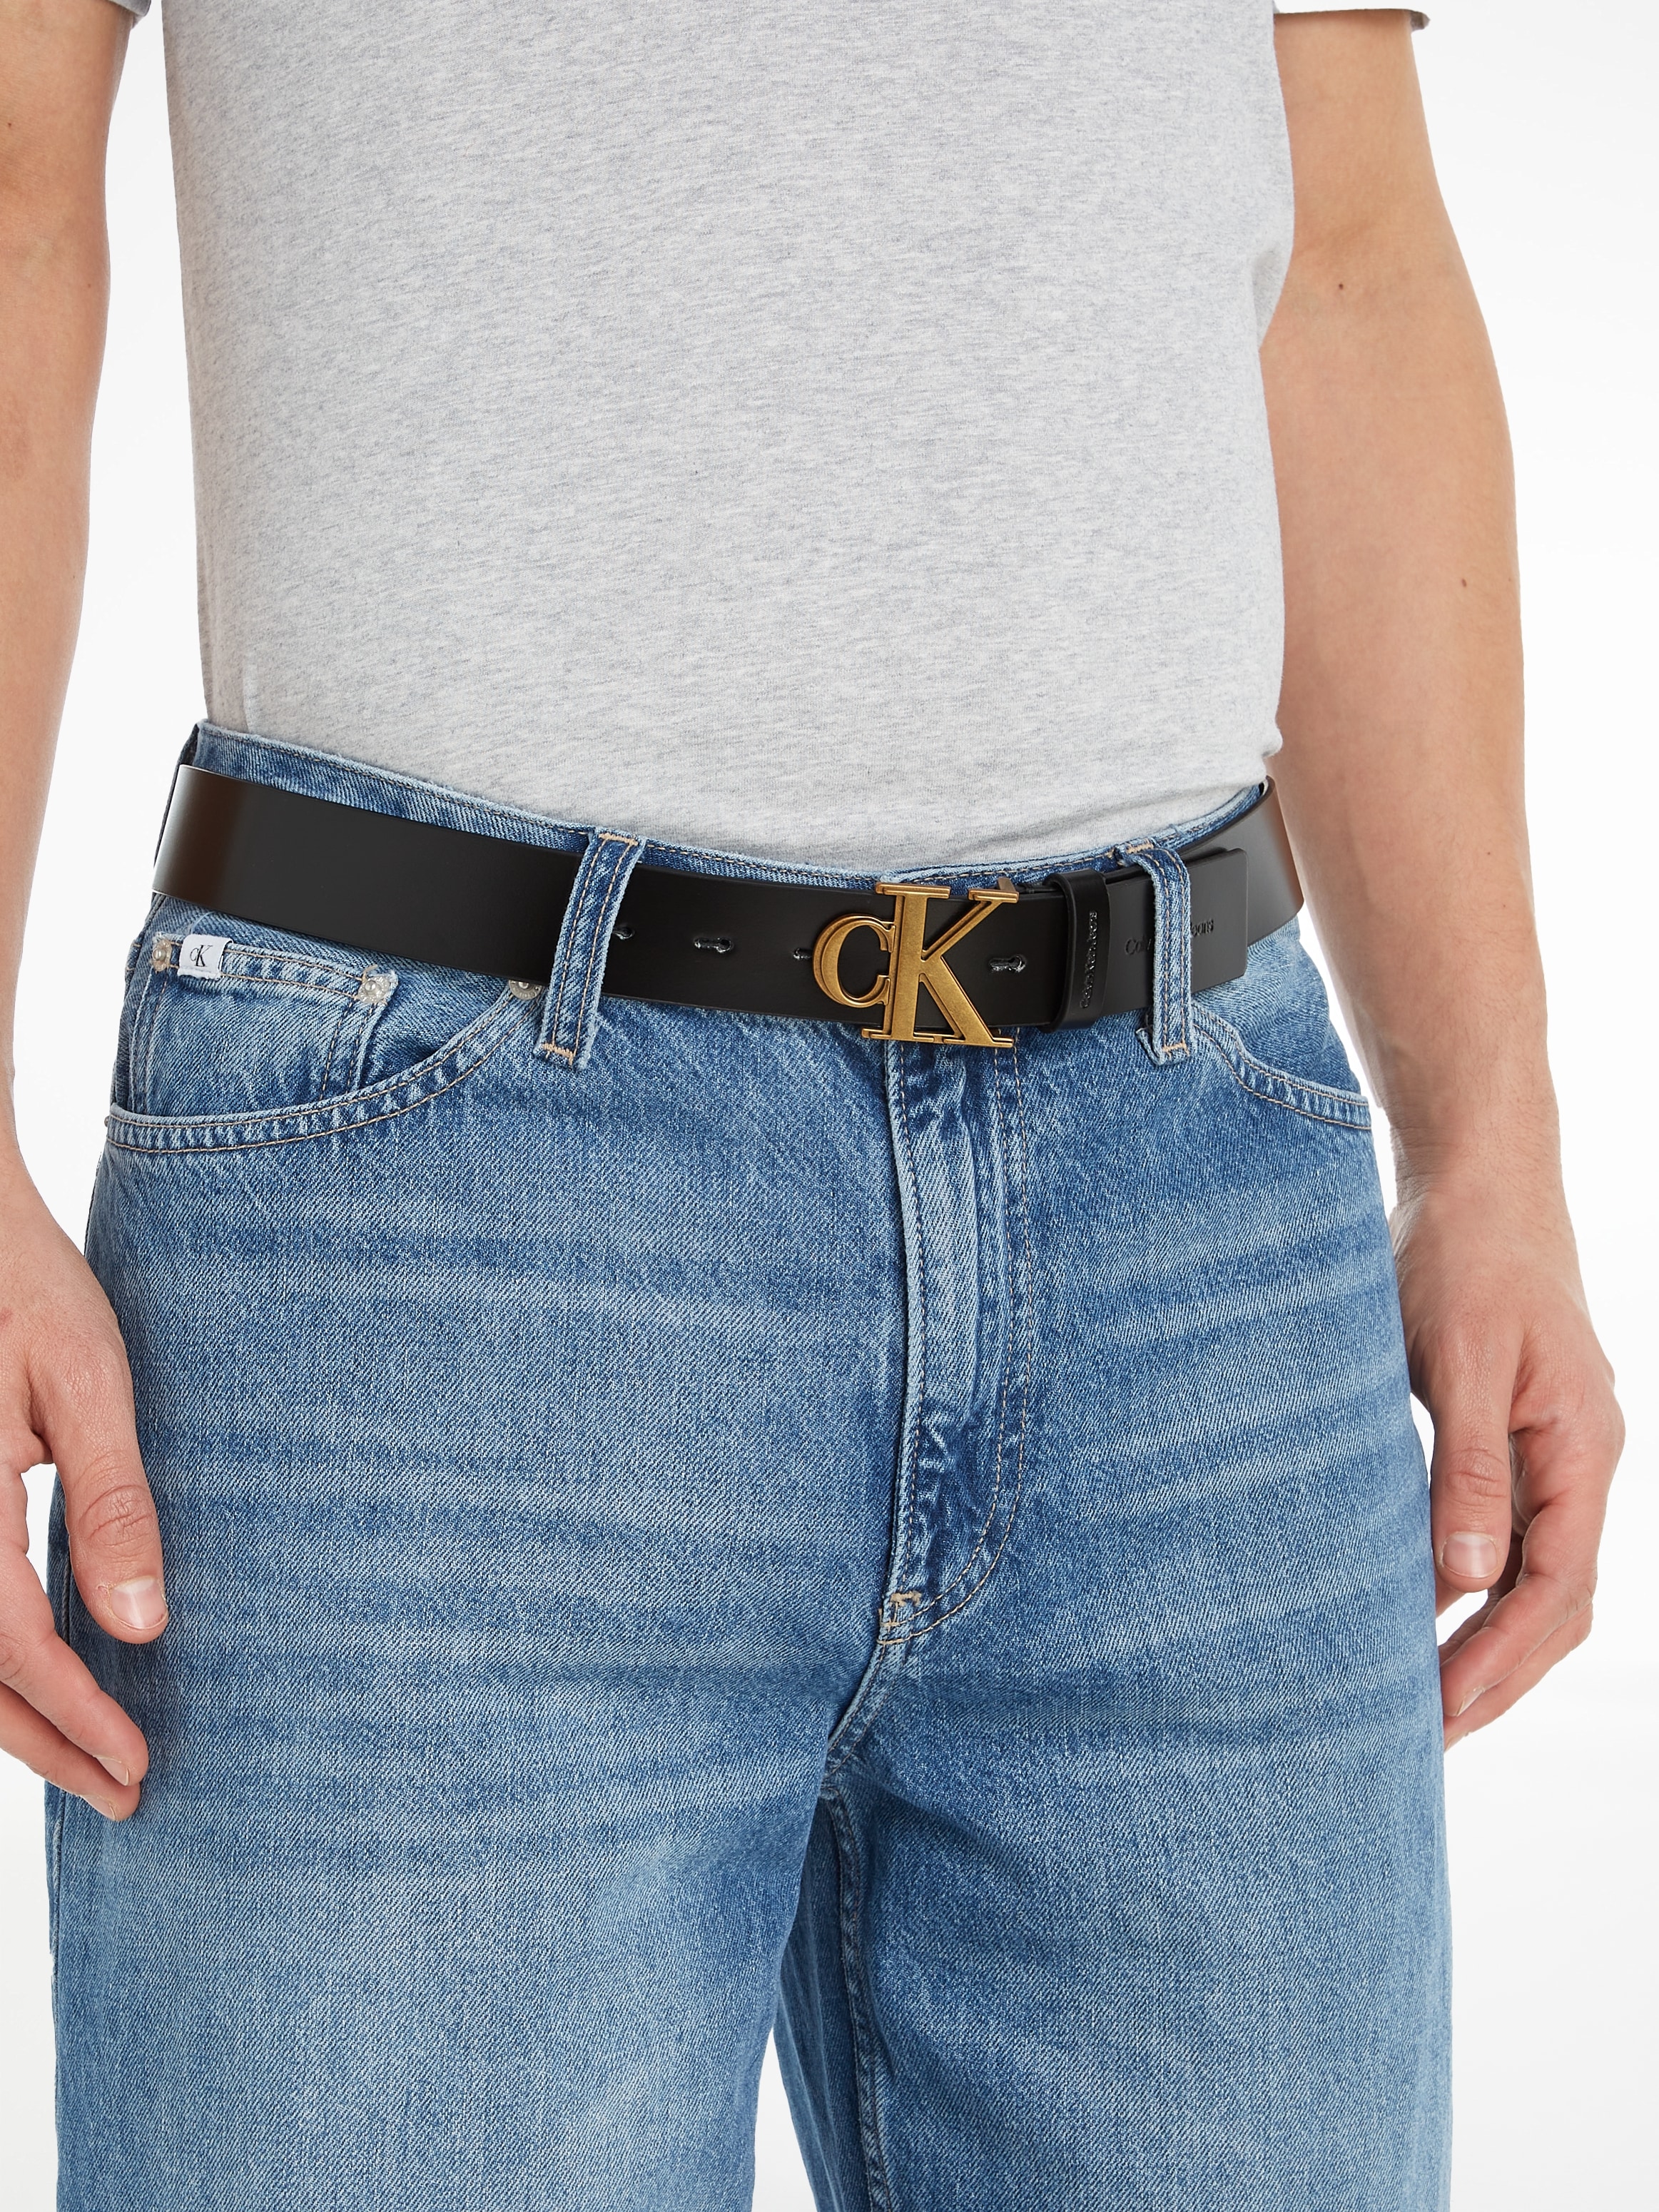 »Gürtel MONO Ledergürtel Klein Jeans LTHR« kaufen bei Calvin OTTO OUTLINE